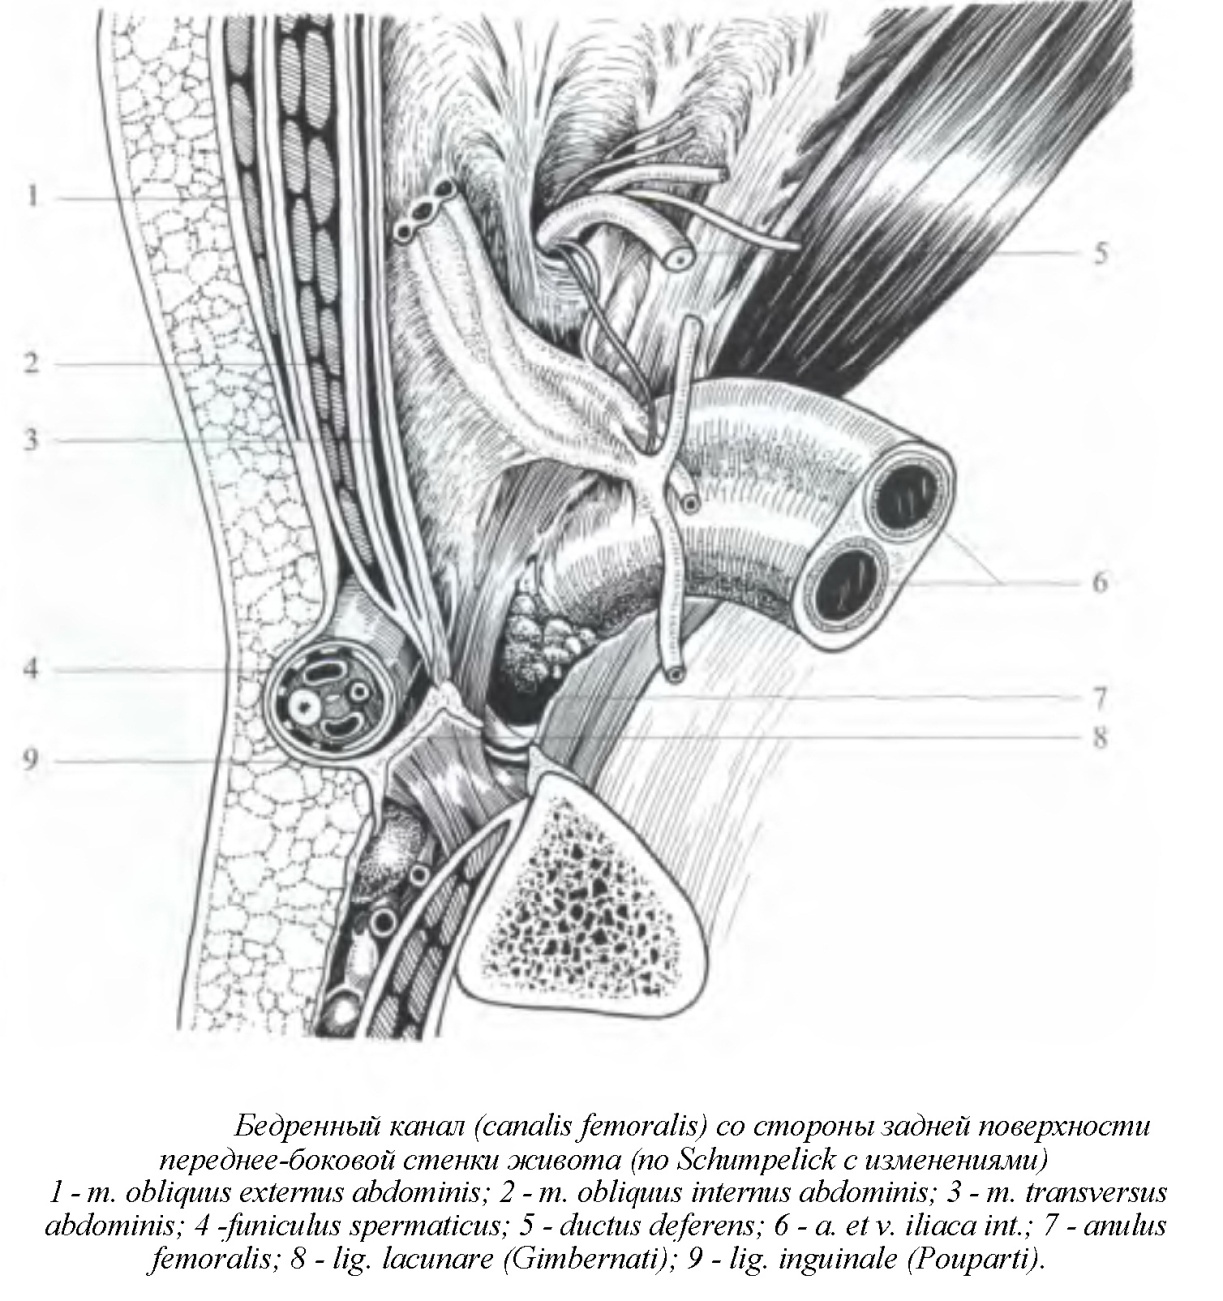 Топография бедренного канала топографическая анатомия